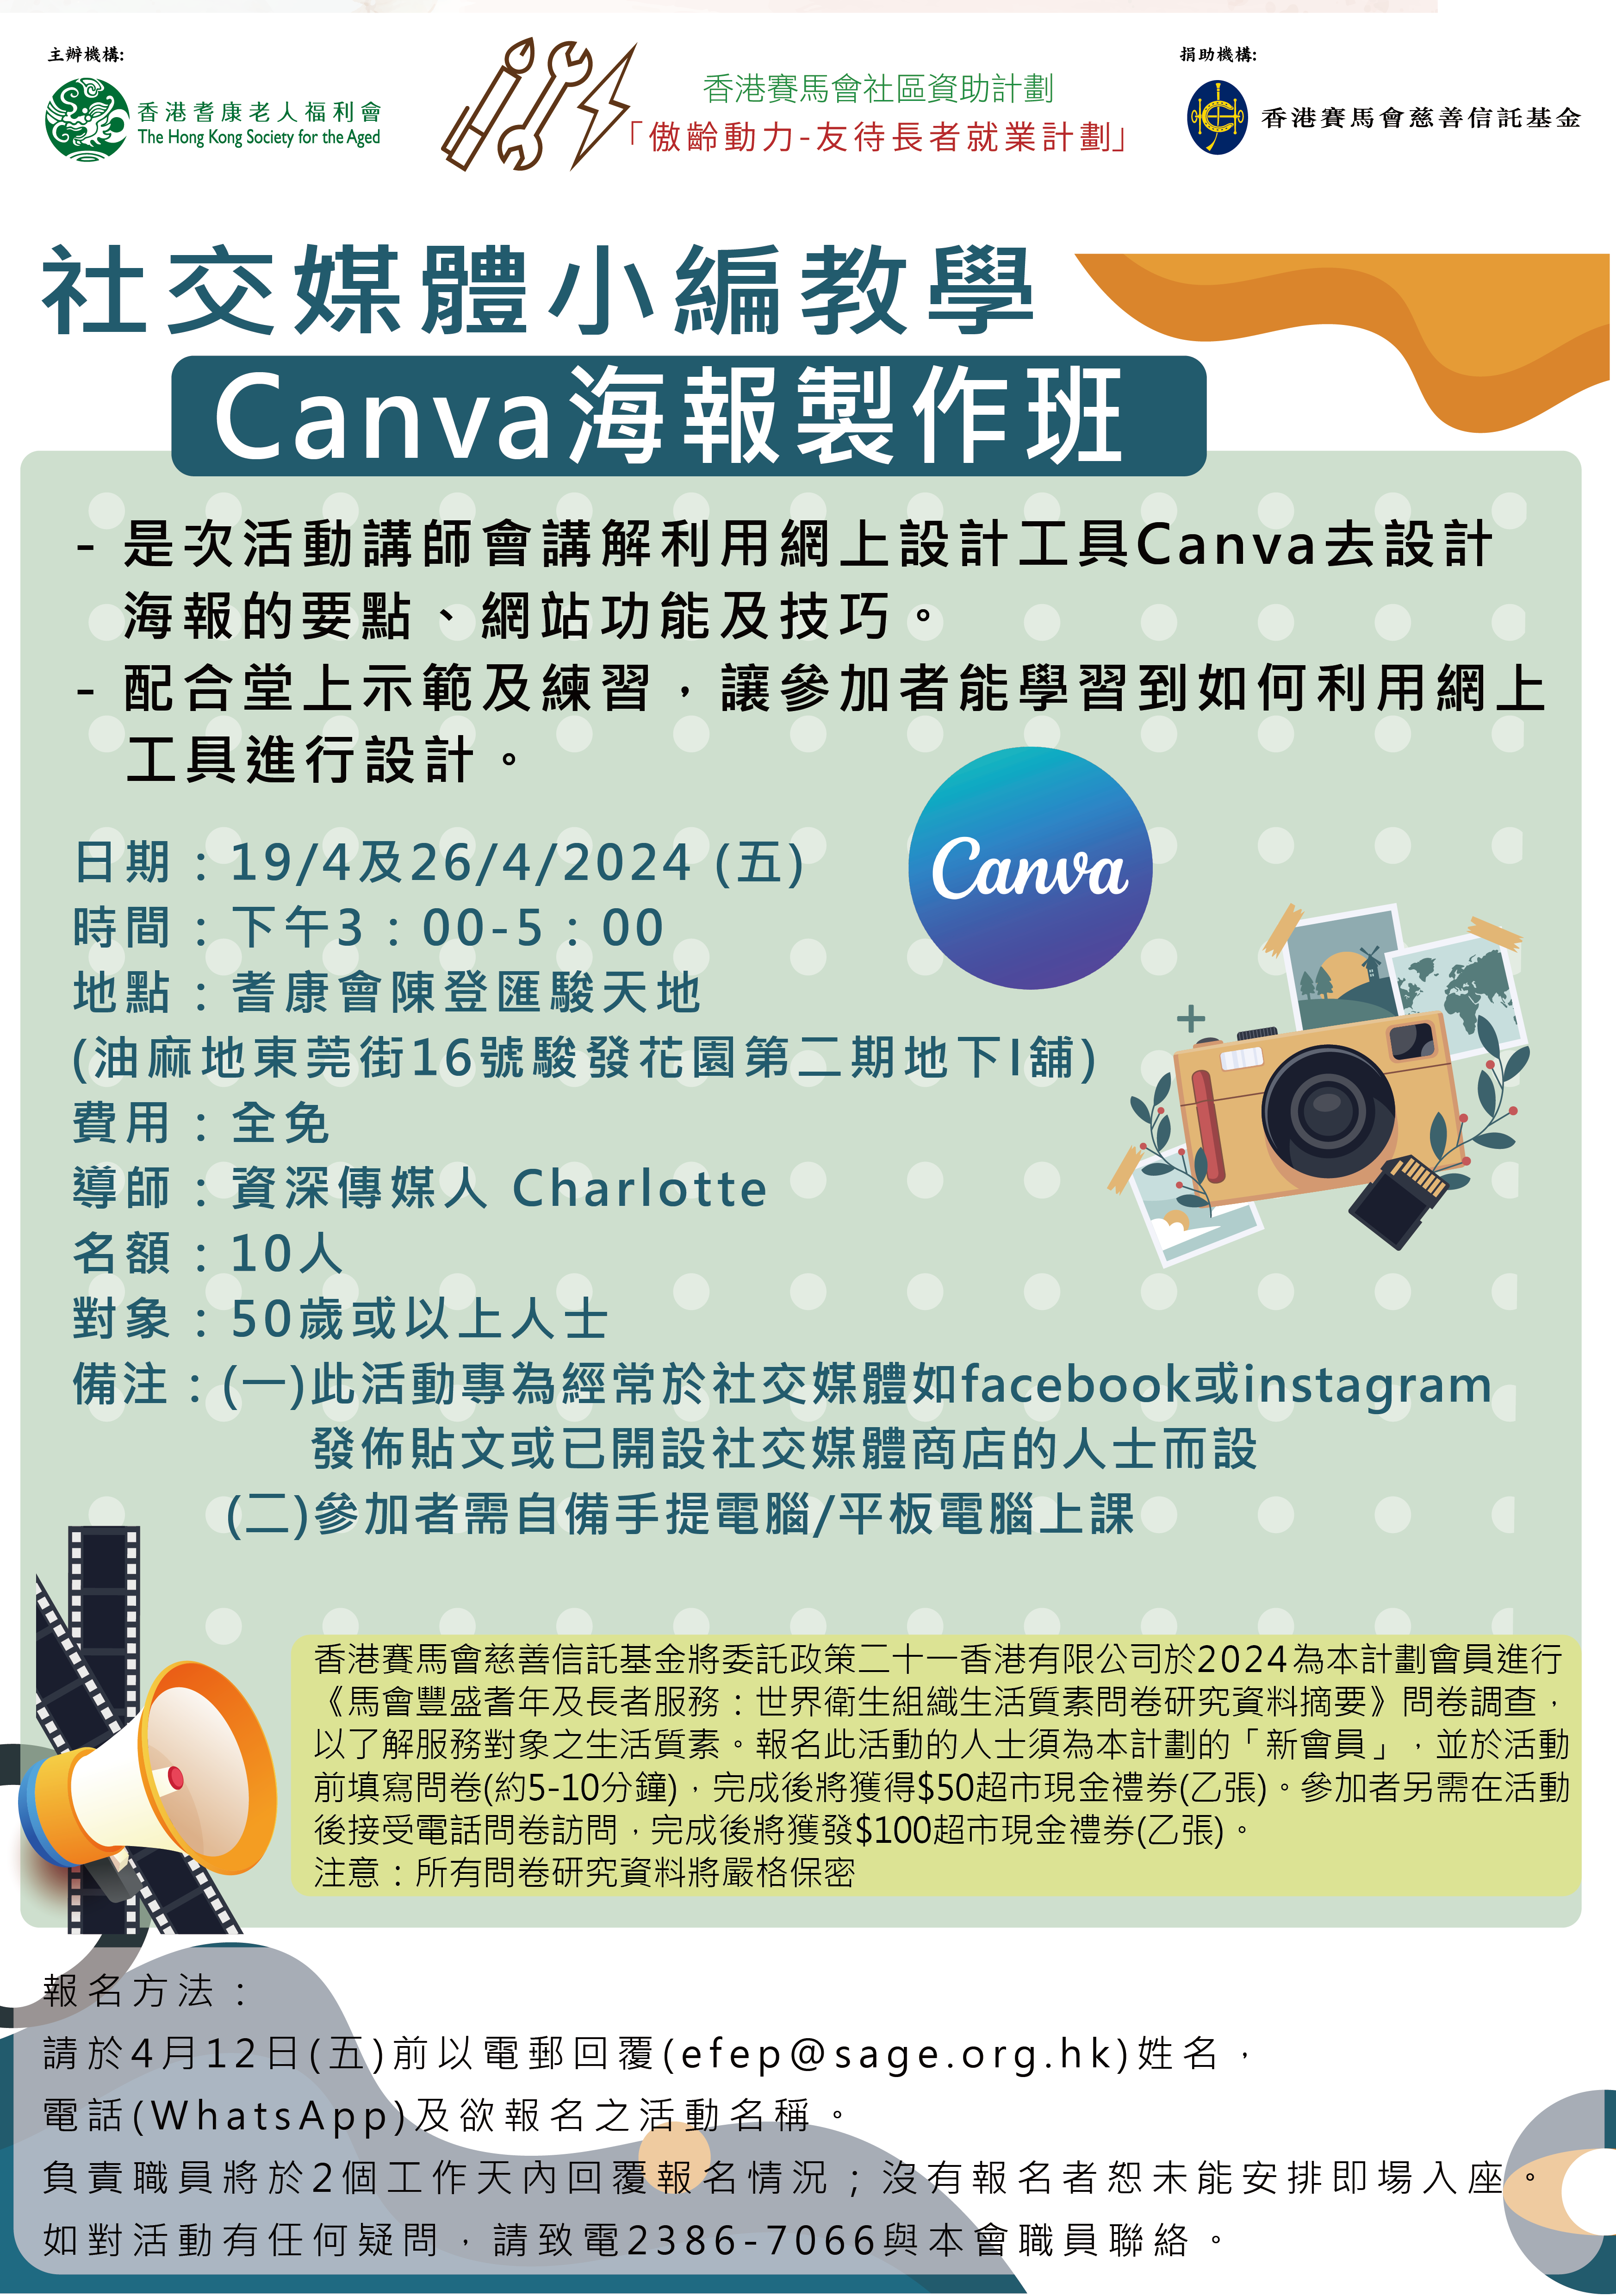 EFEP24-006社交媒體小編教學-Canva海報製作班